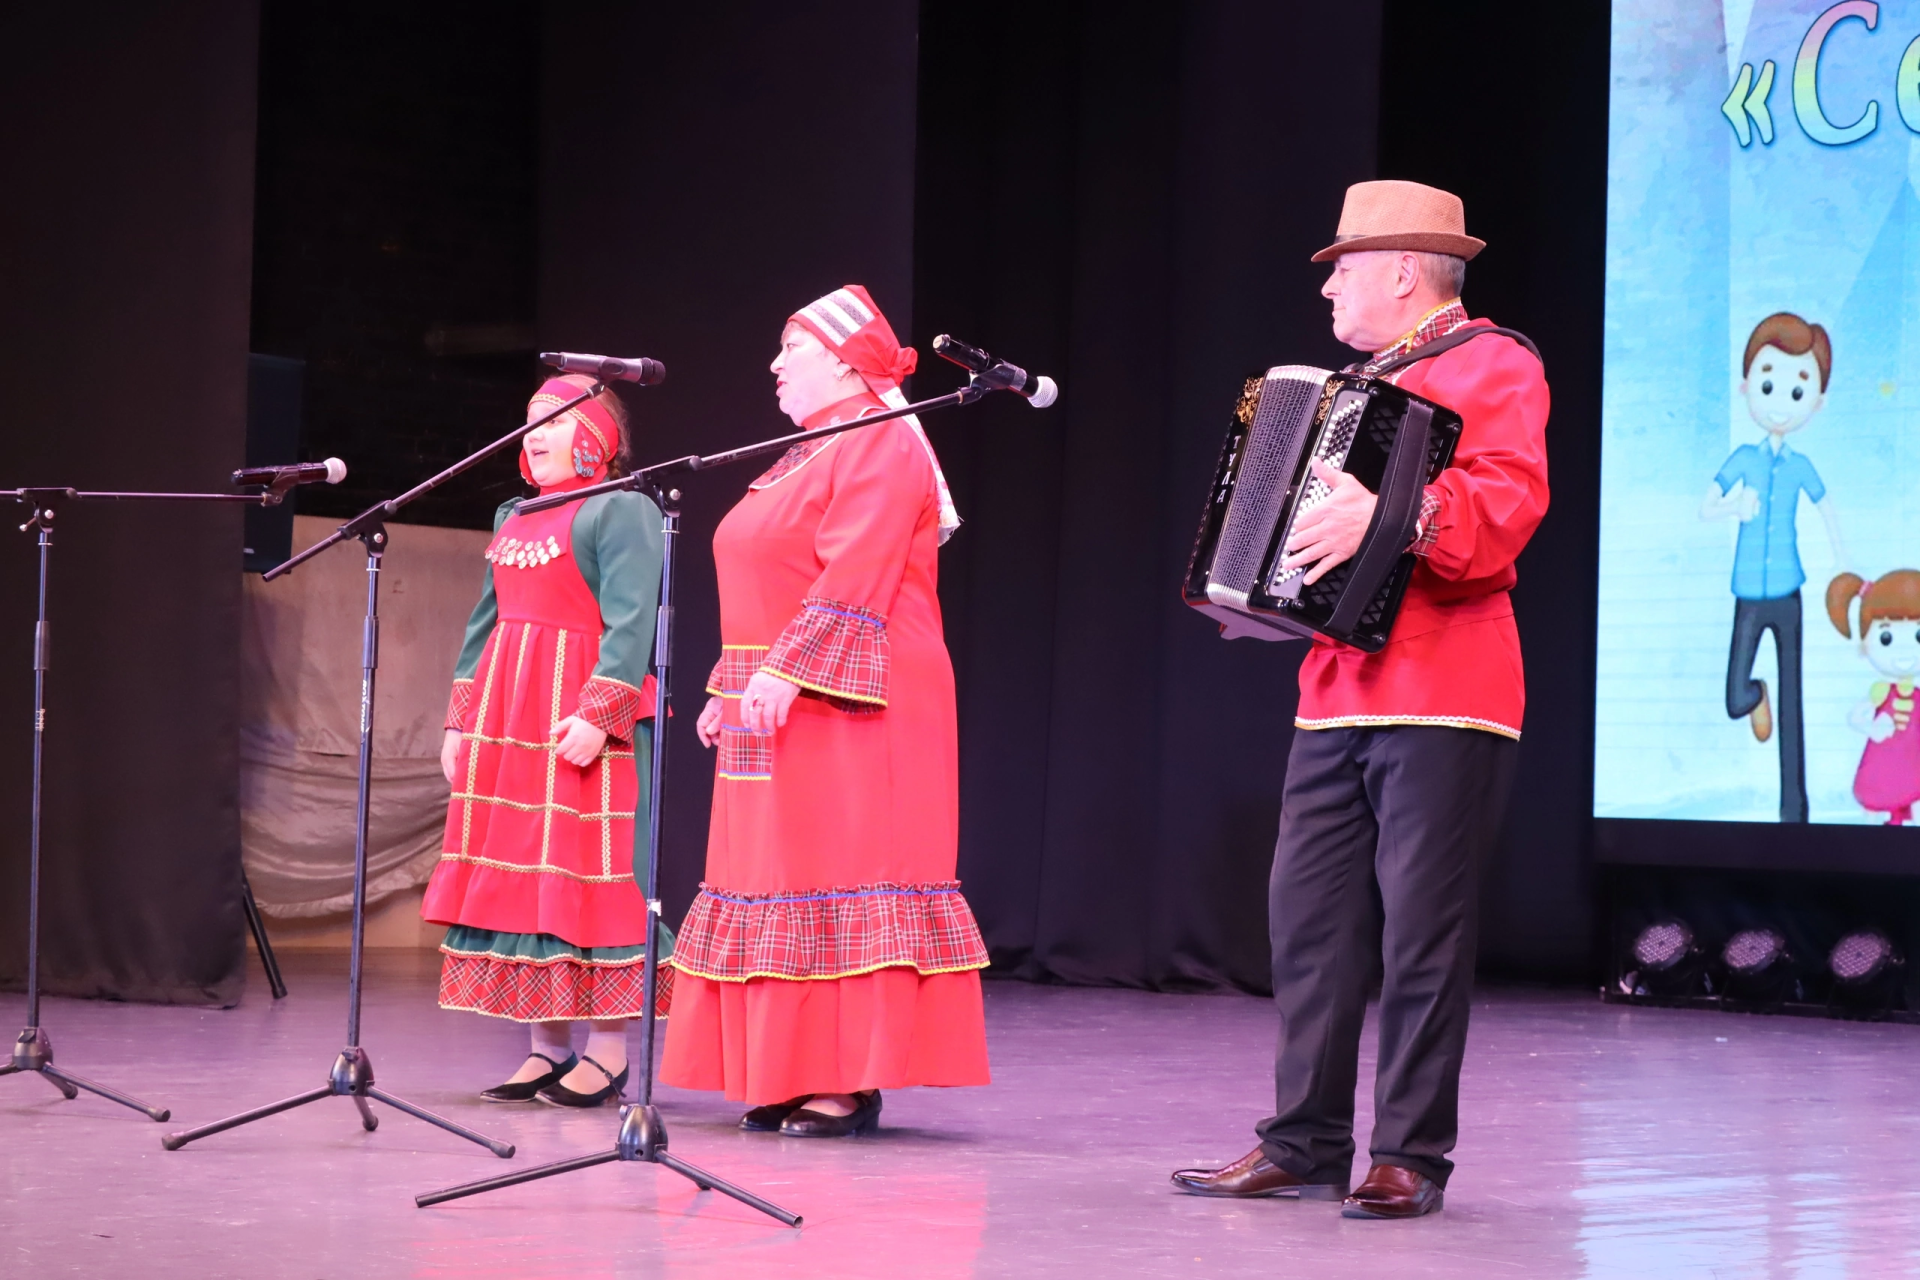 В Менделеевске стартовали концерты в рамках районного фестиваля народного творчества